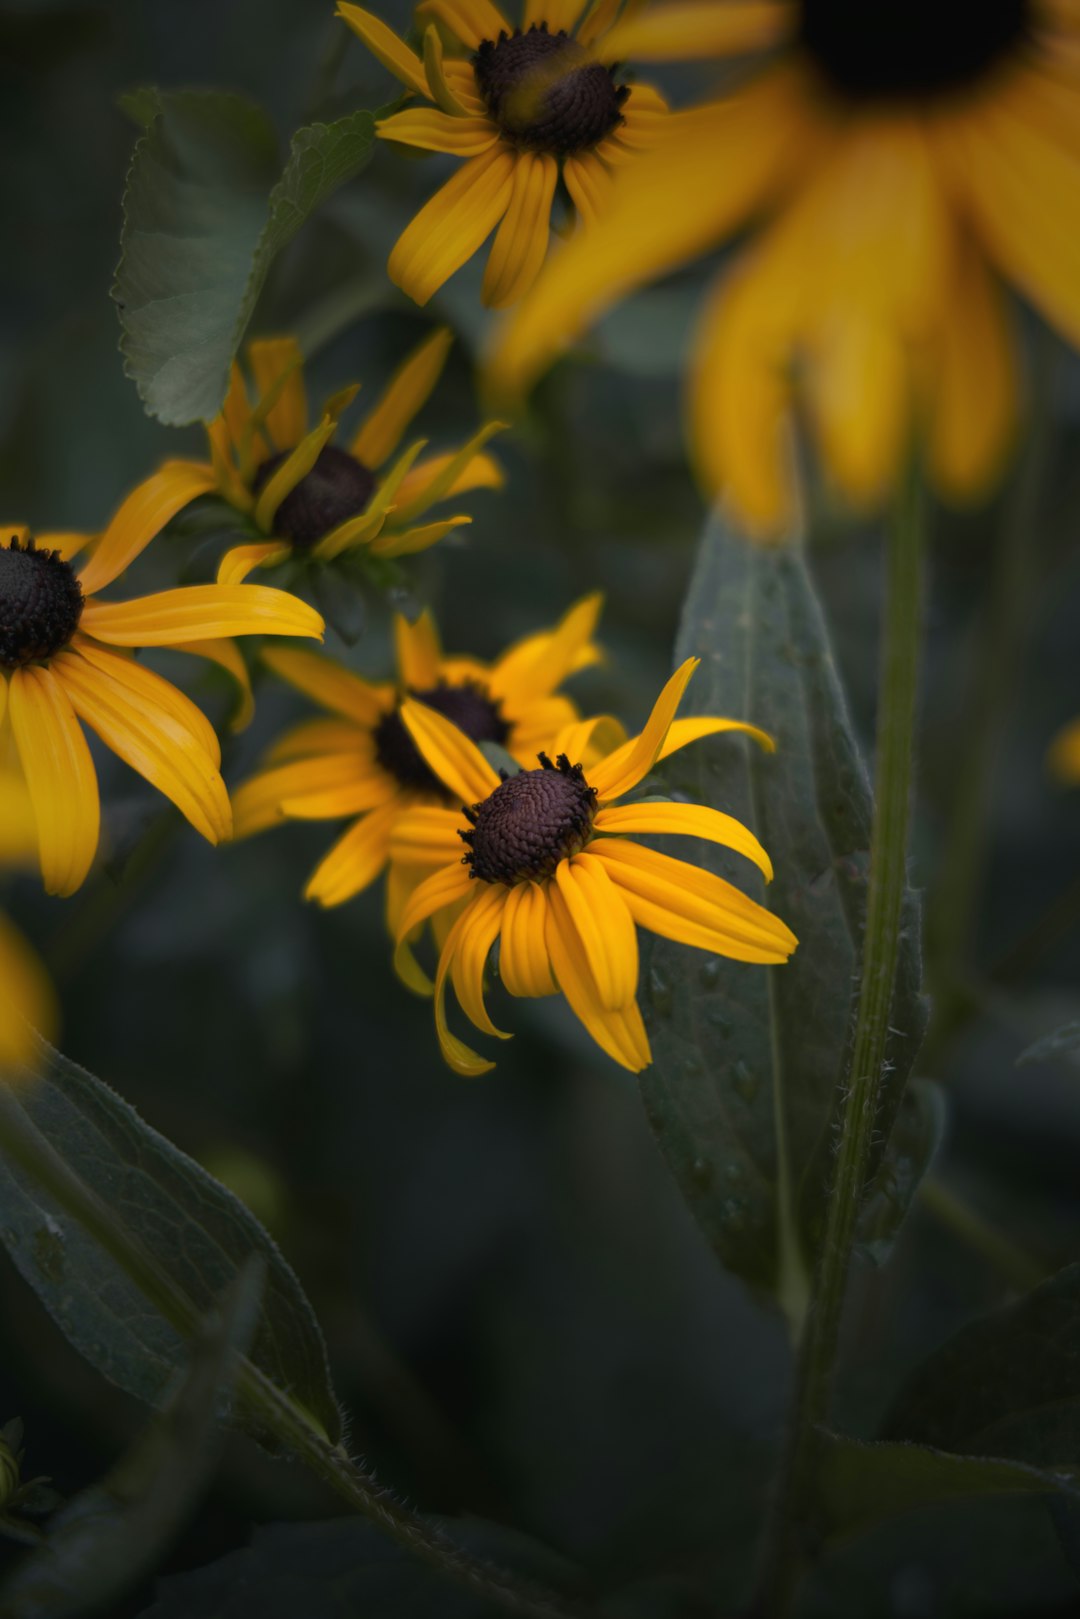 yellow and black flower in tilt shift lens